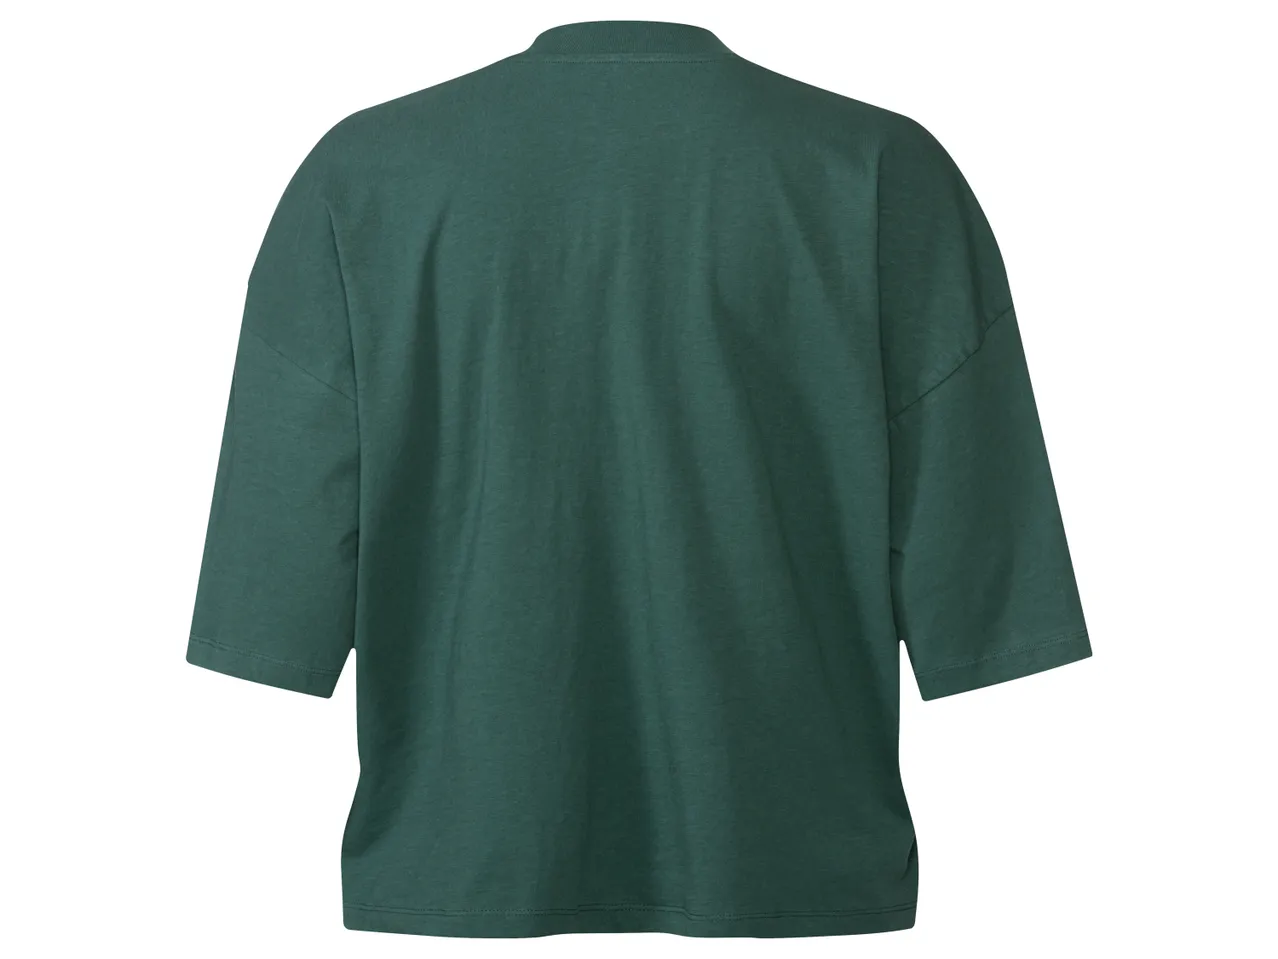 T-Shirt oversize da donna , prezzo 4.99 EUR 
T-Shirt oversize da donna Misure: ...